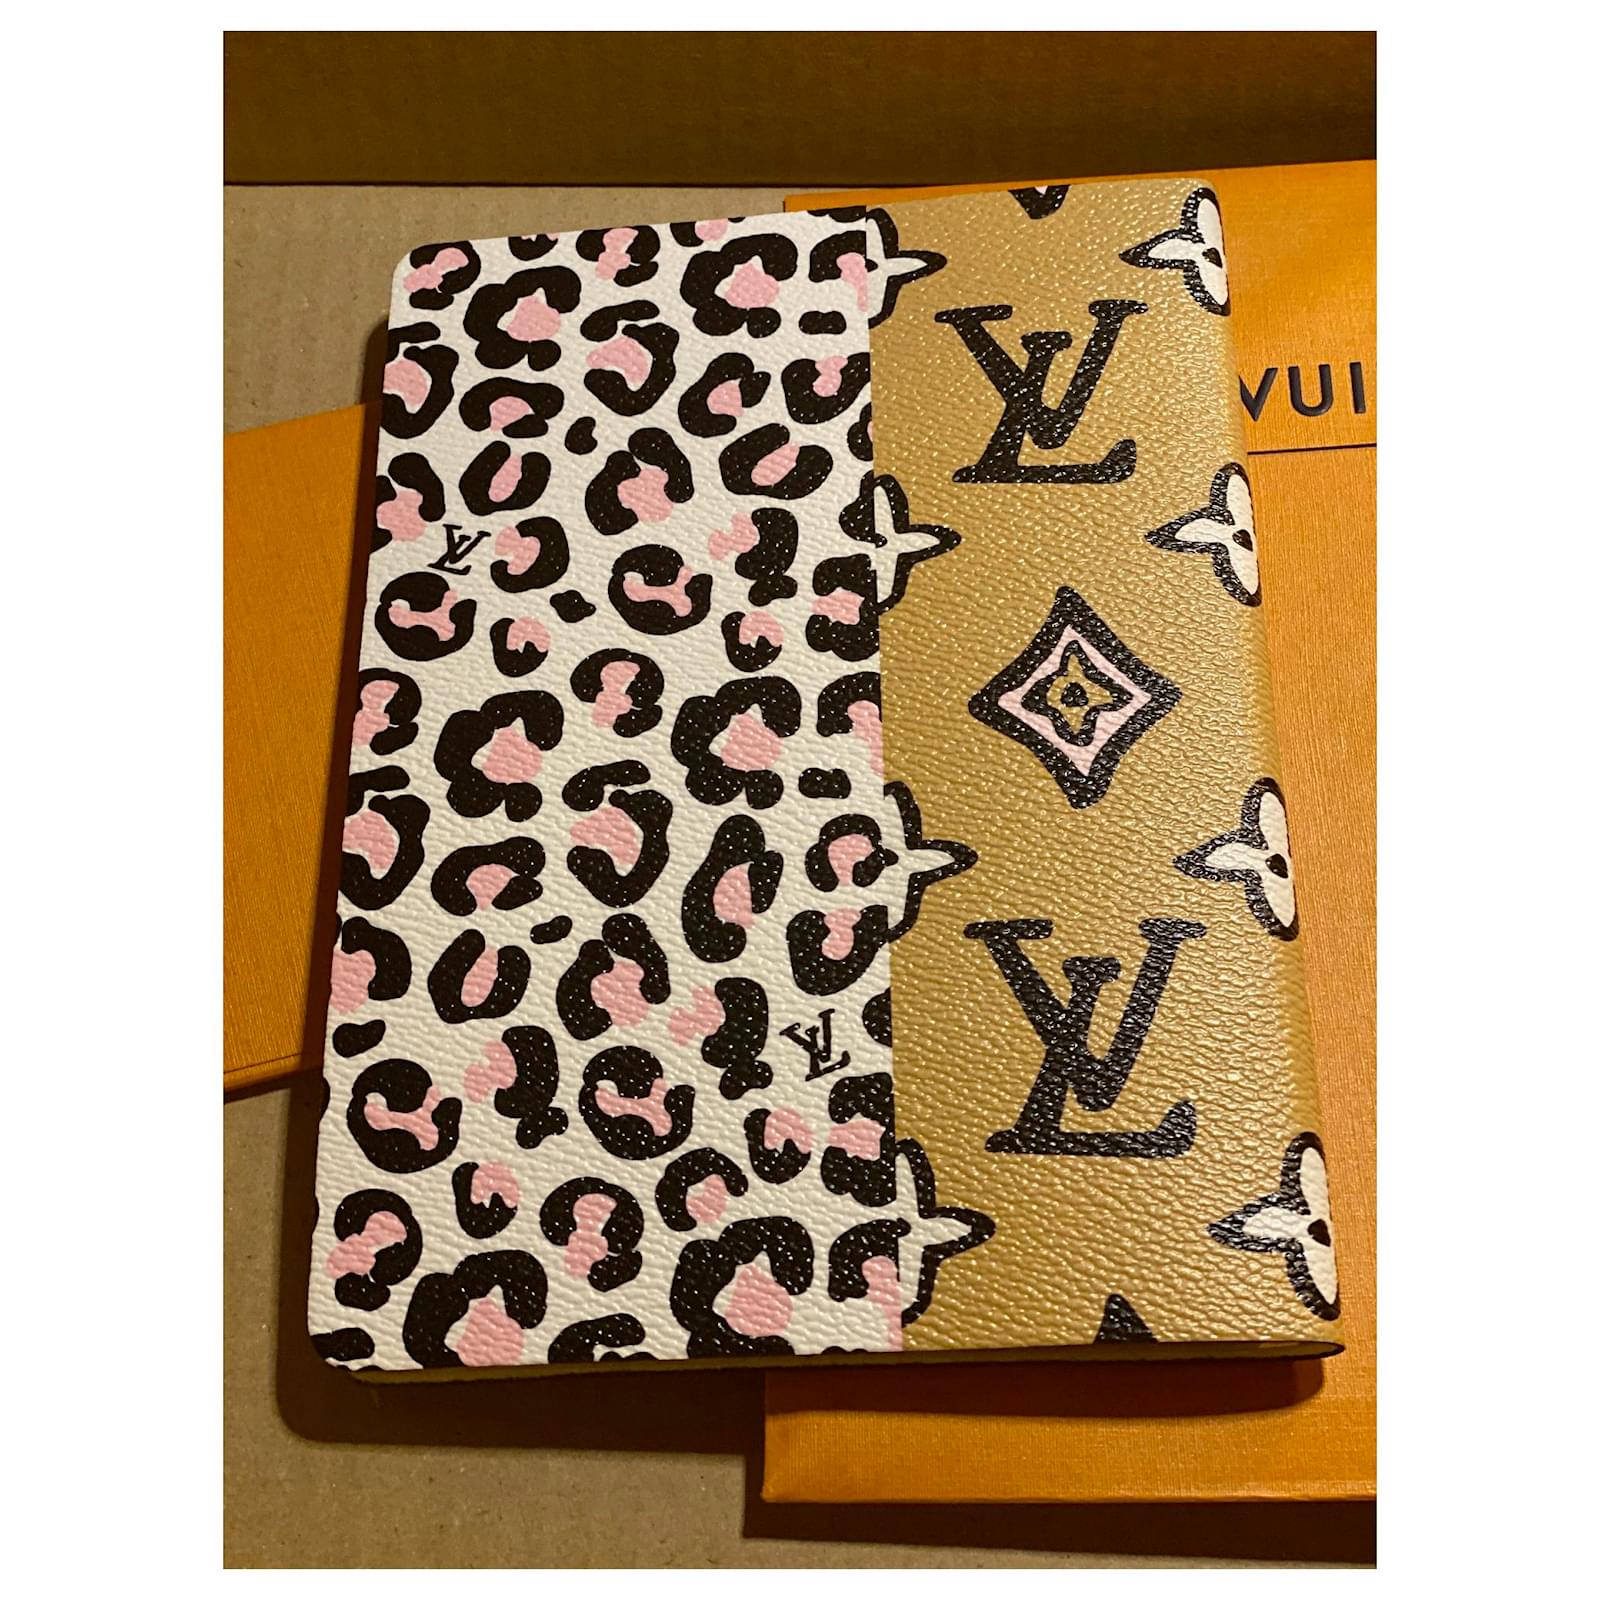 Louis Vuitton notebook clemence wild at heart Leopard print